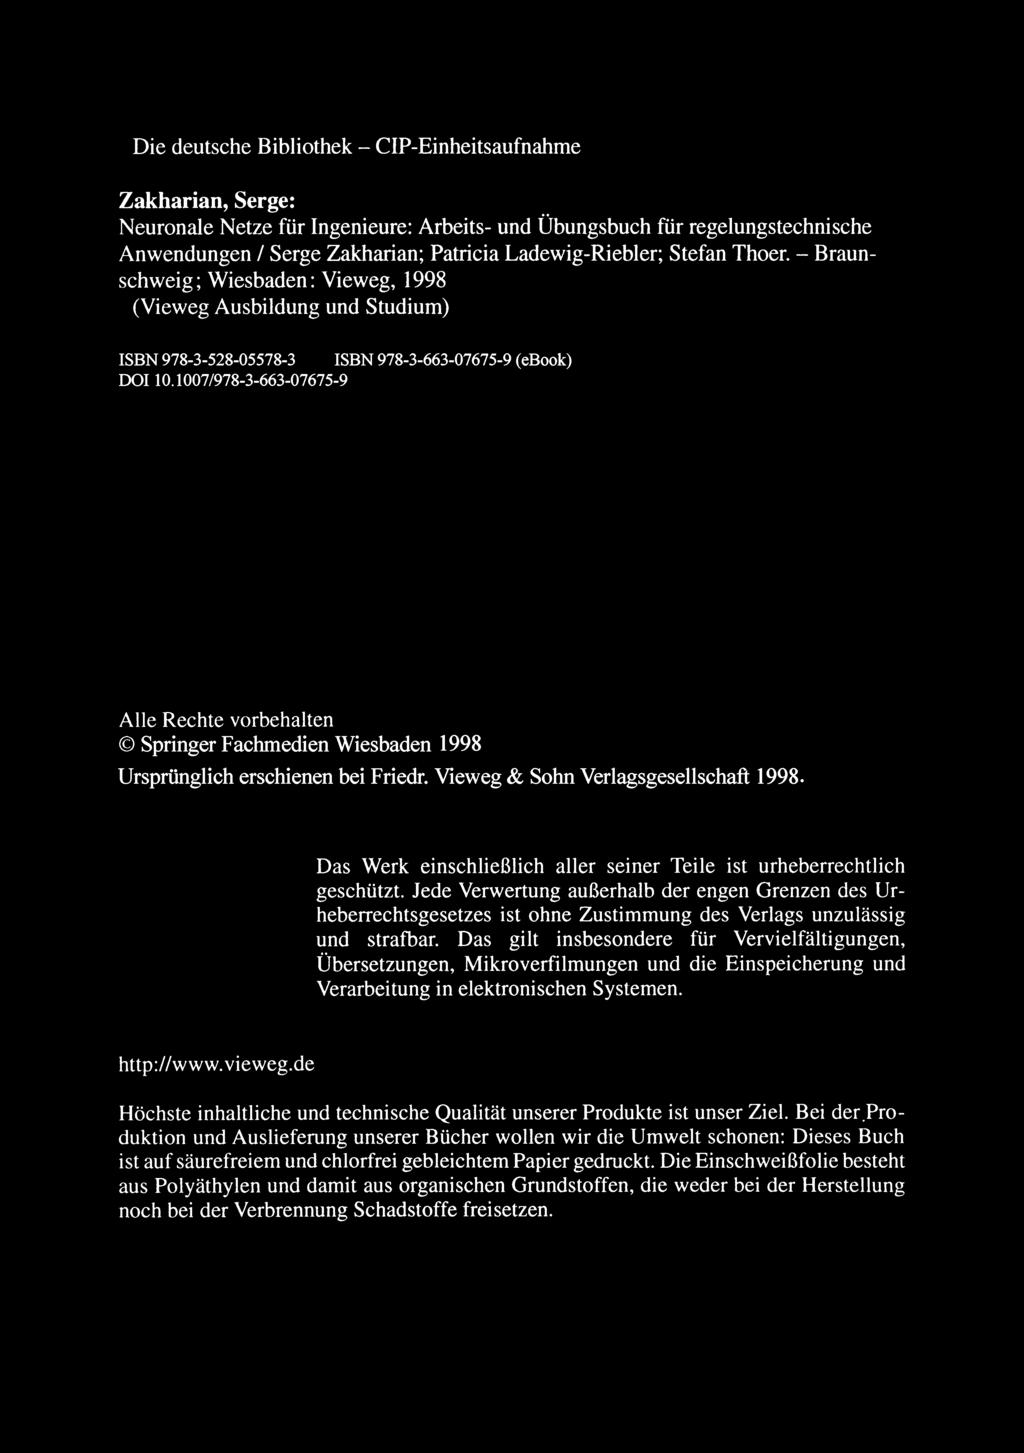 Die deutsche Bibliothek - CIP-Einheitsaufnahme Zakharian, Serge: Neuronale Netze für Ingenieure: Arbeits- und Übungsbuch für regelungstechnische Anwendungen / Serge Zakharian; Patricia